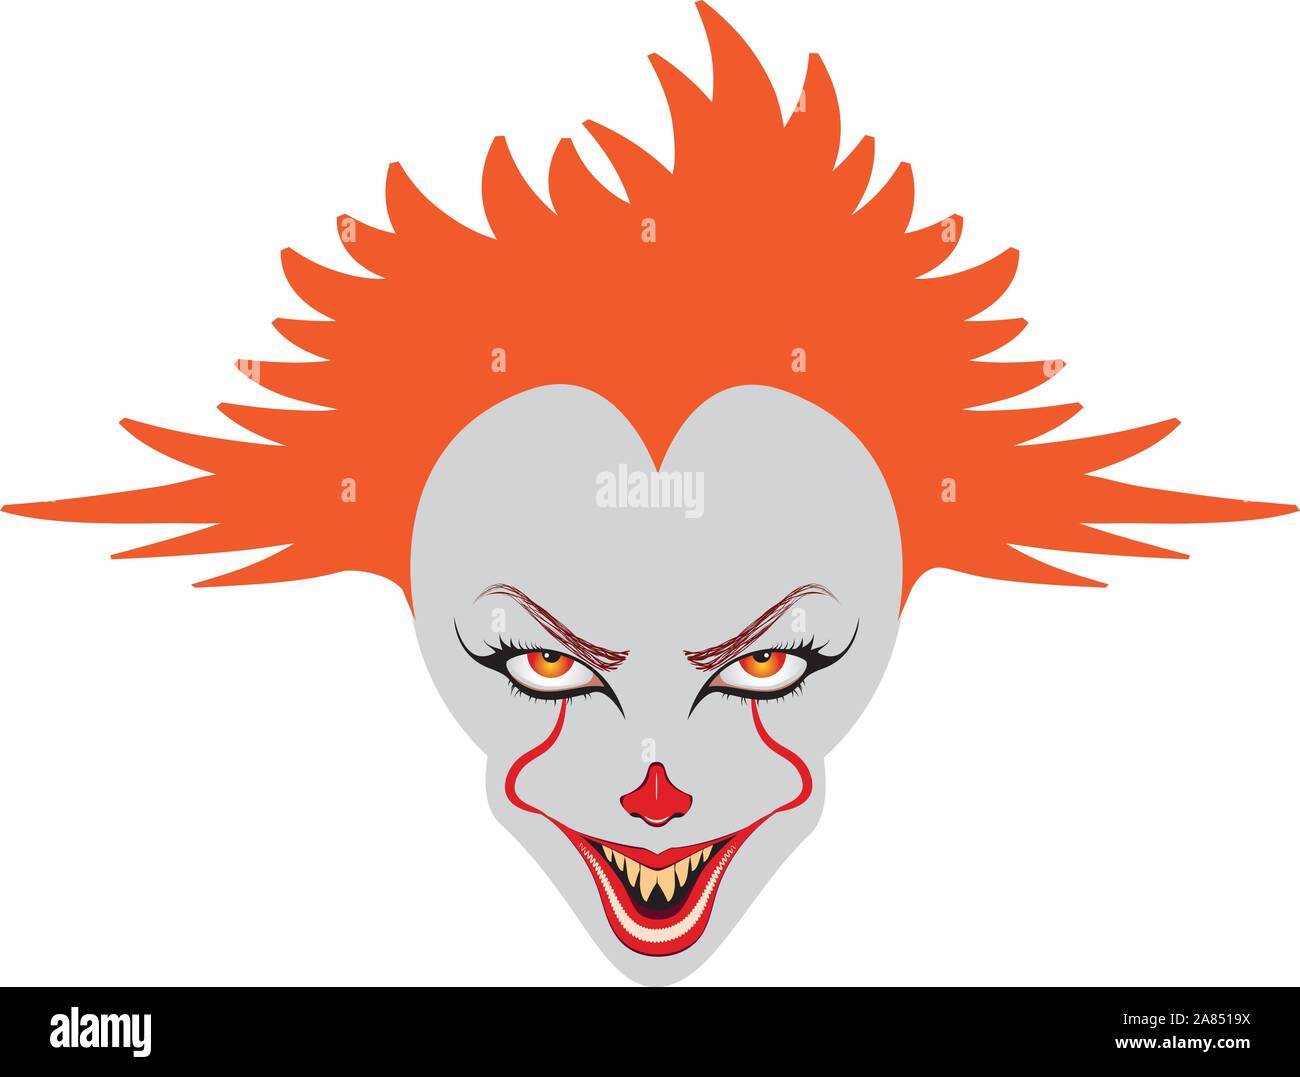 Cartoon creepy evil clown face for Halloween Stock Vector Image & Art -  Alamy